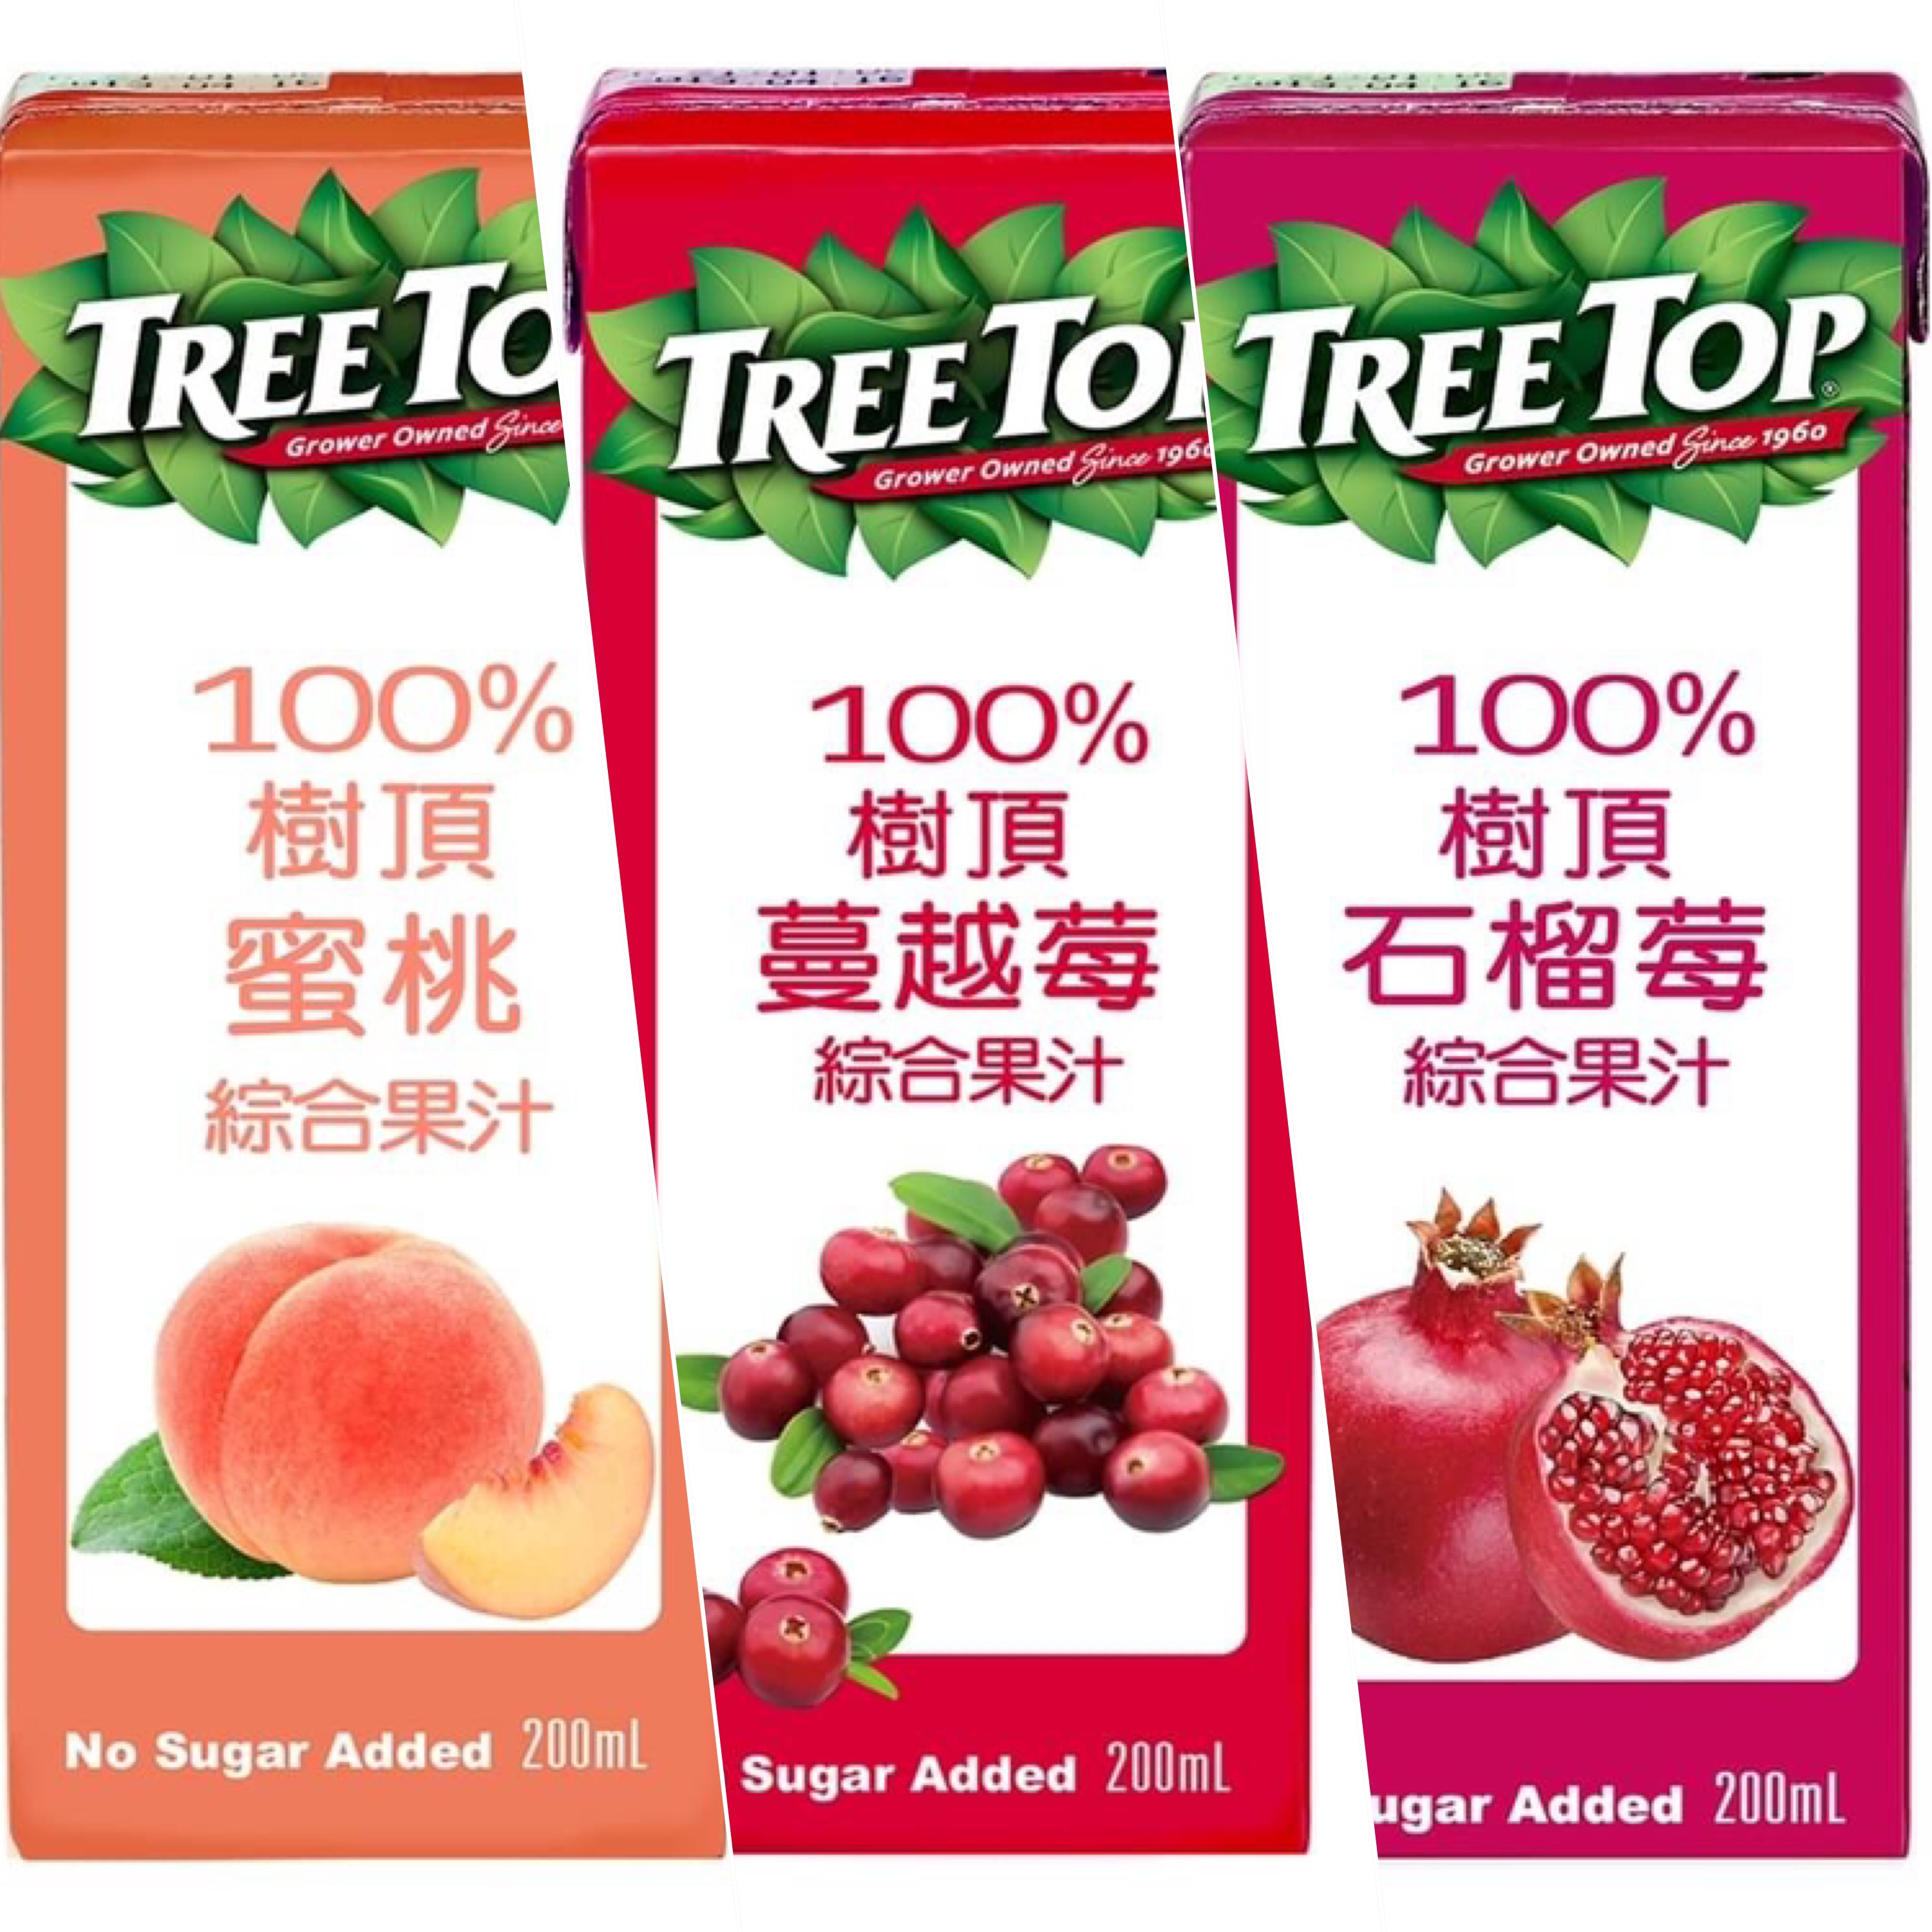 TREE TOP 樹頂100%綜合果汁 利樂包200ML 共48瓶/2箱【任選水蜜桃、蔓越莓、石榴2箱免運組】